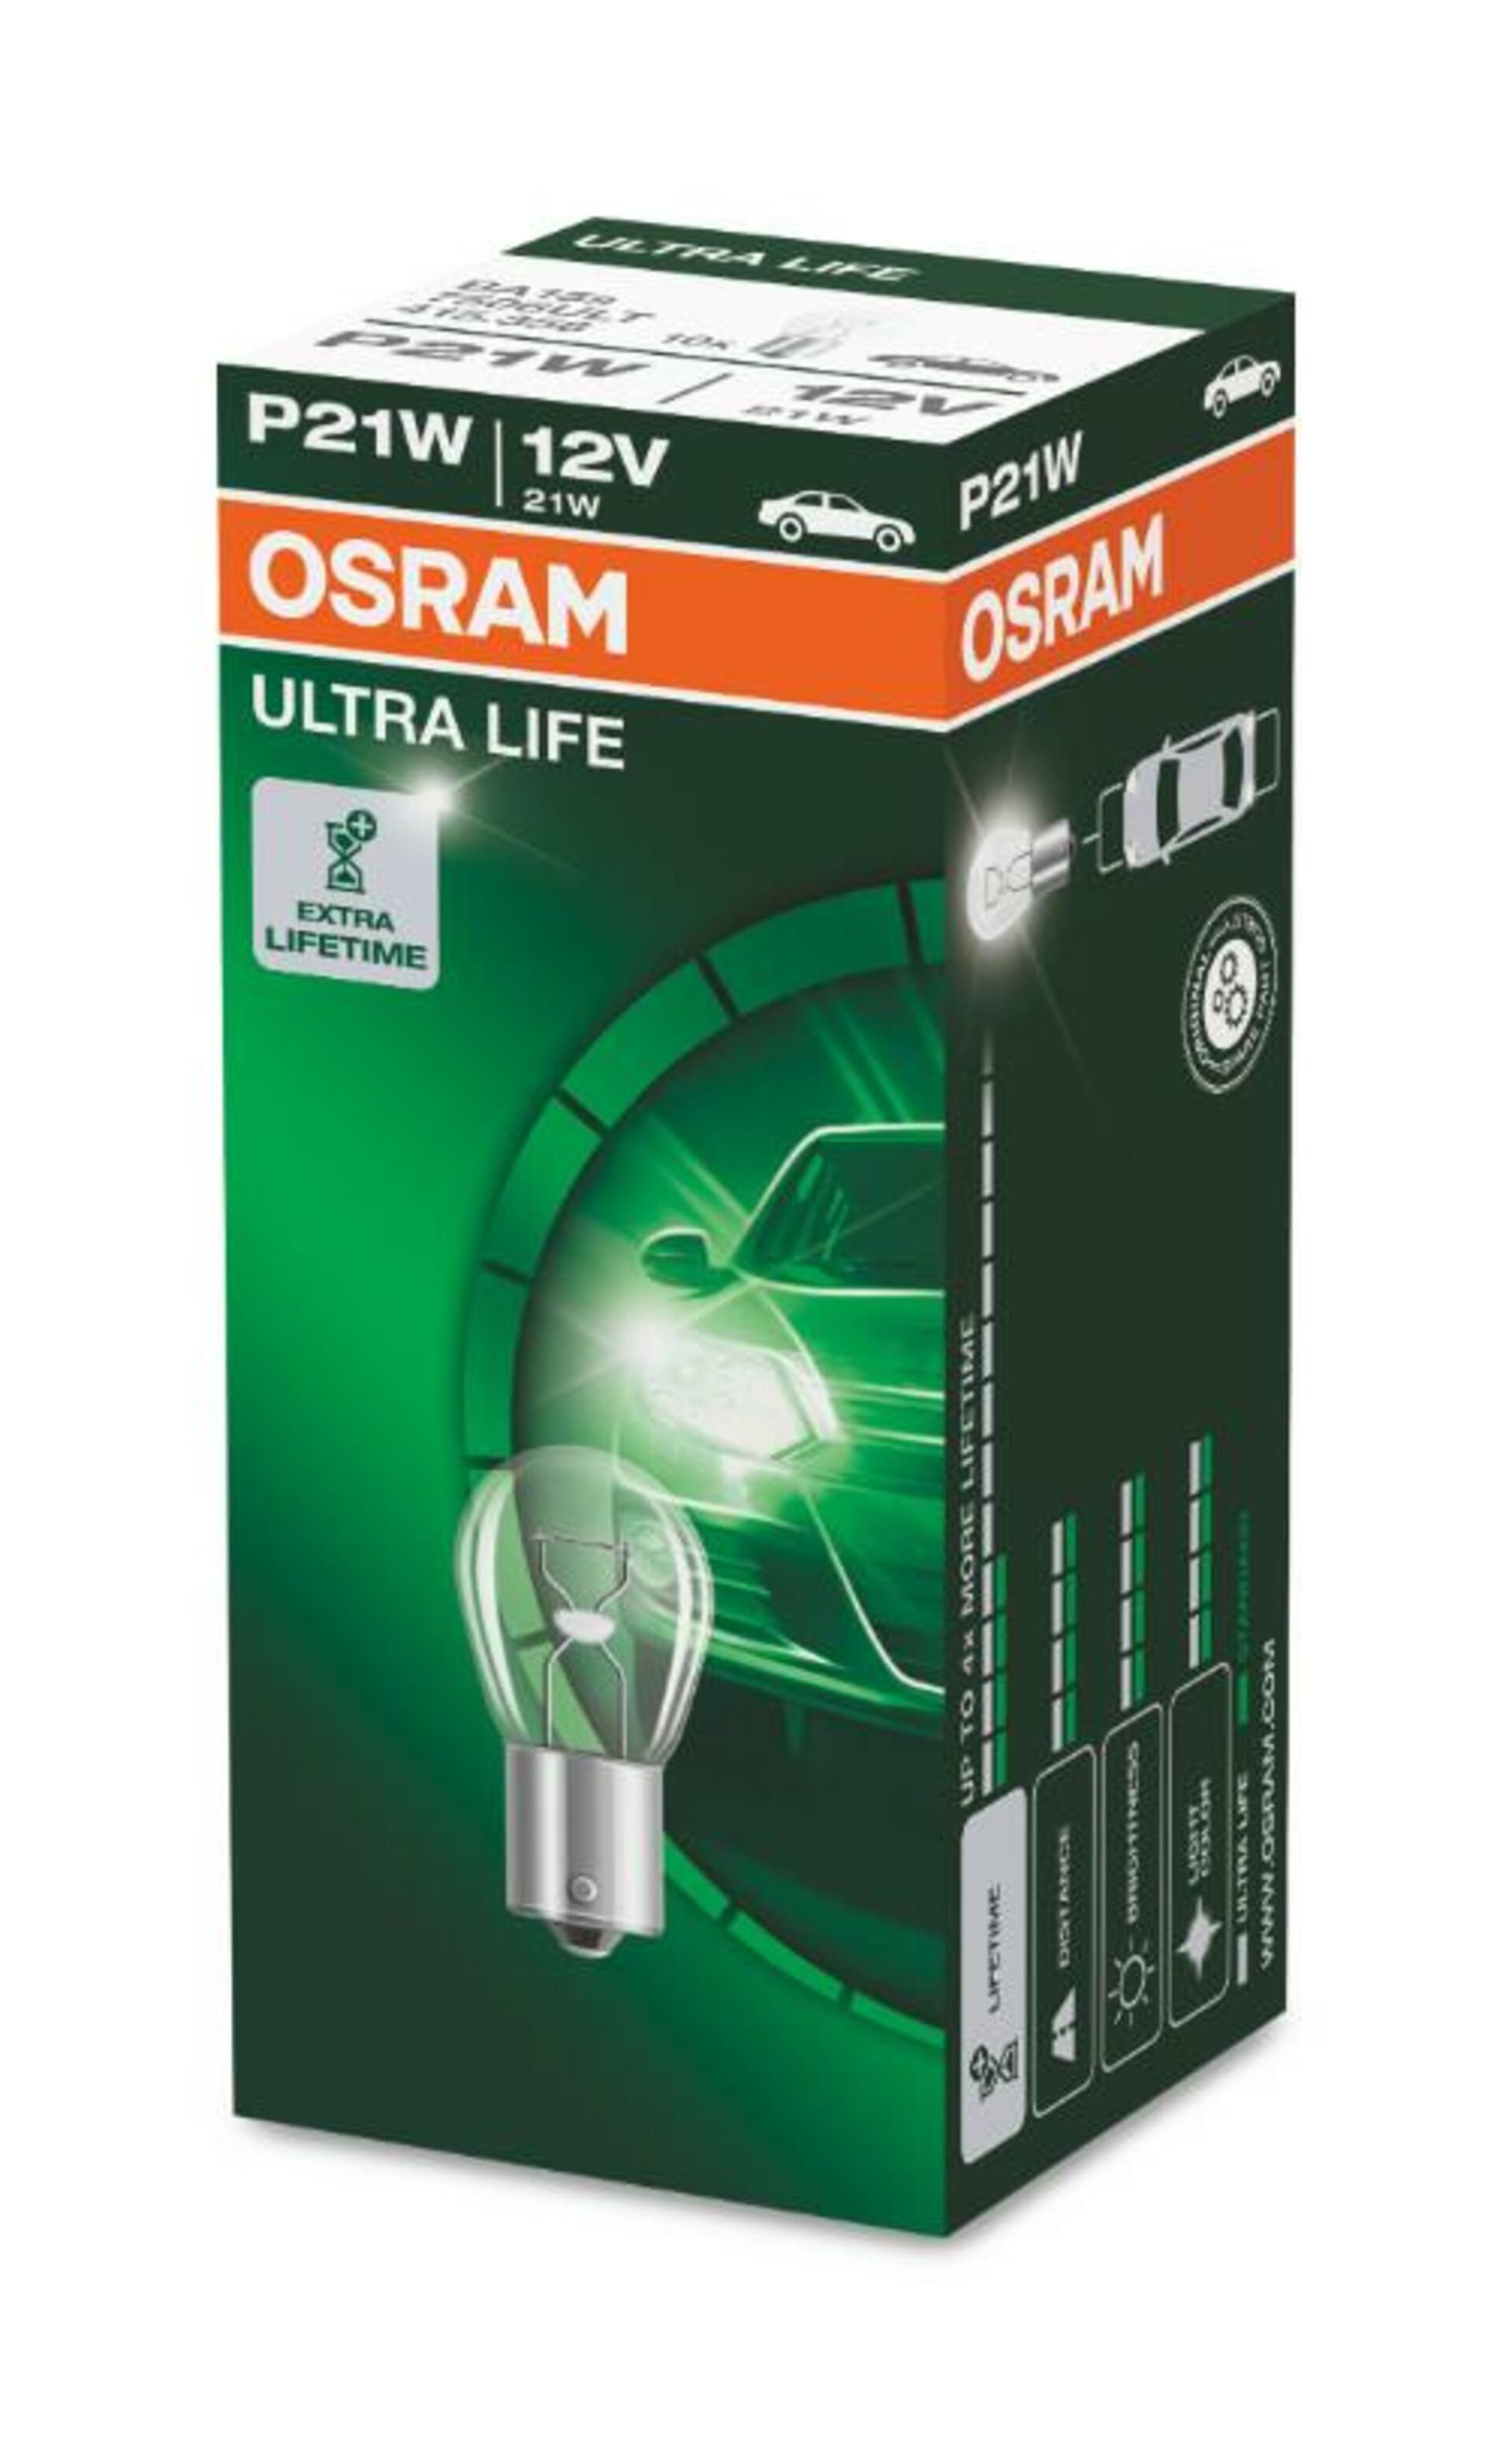 OSRAM P21W ULTRA LIFE 7506ULT 12V